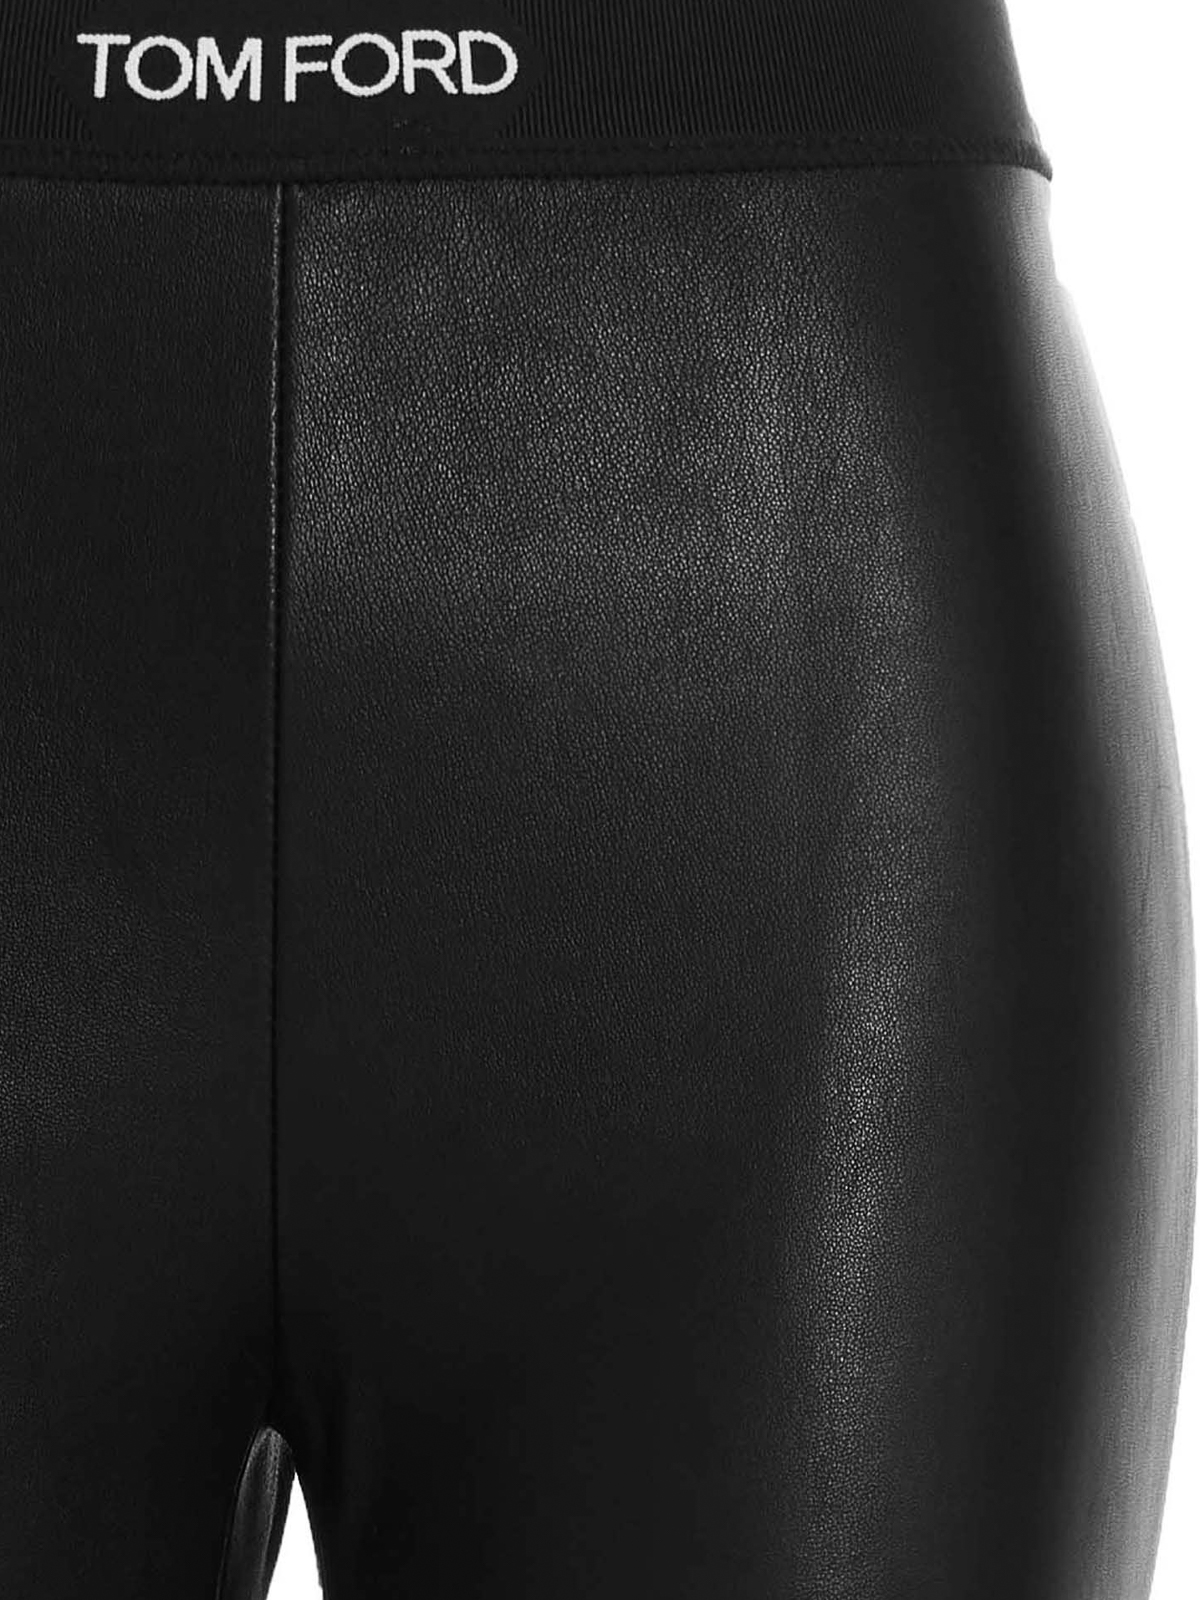 Leggings Tom Ford - Logo leather leggings - PAL718LEX224LB999